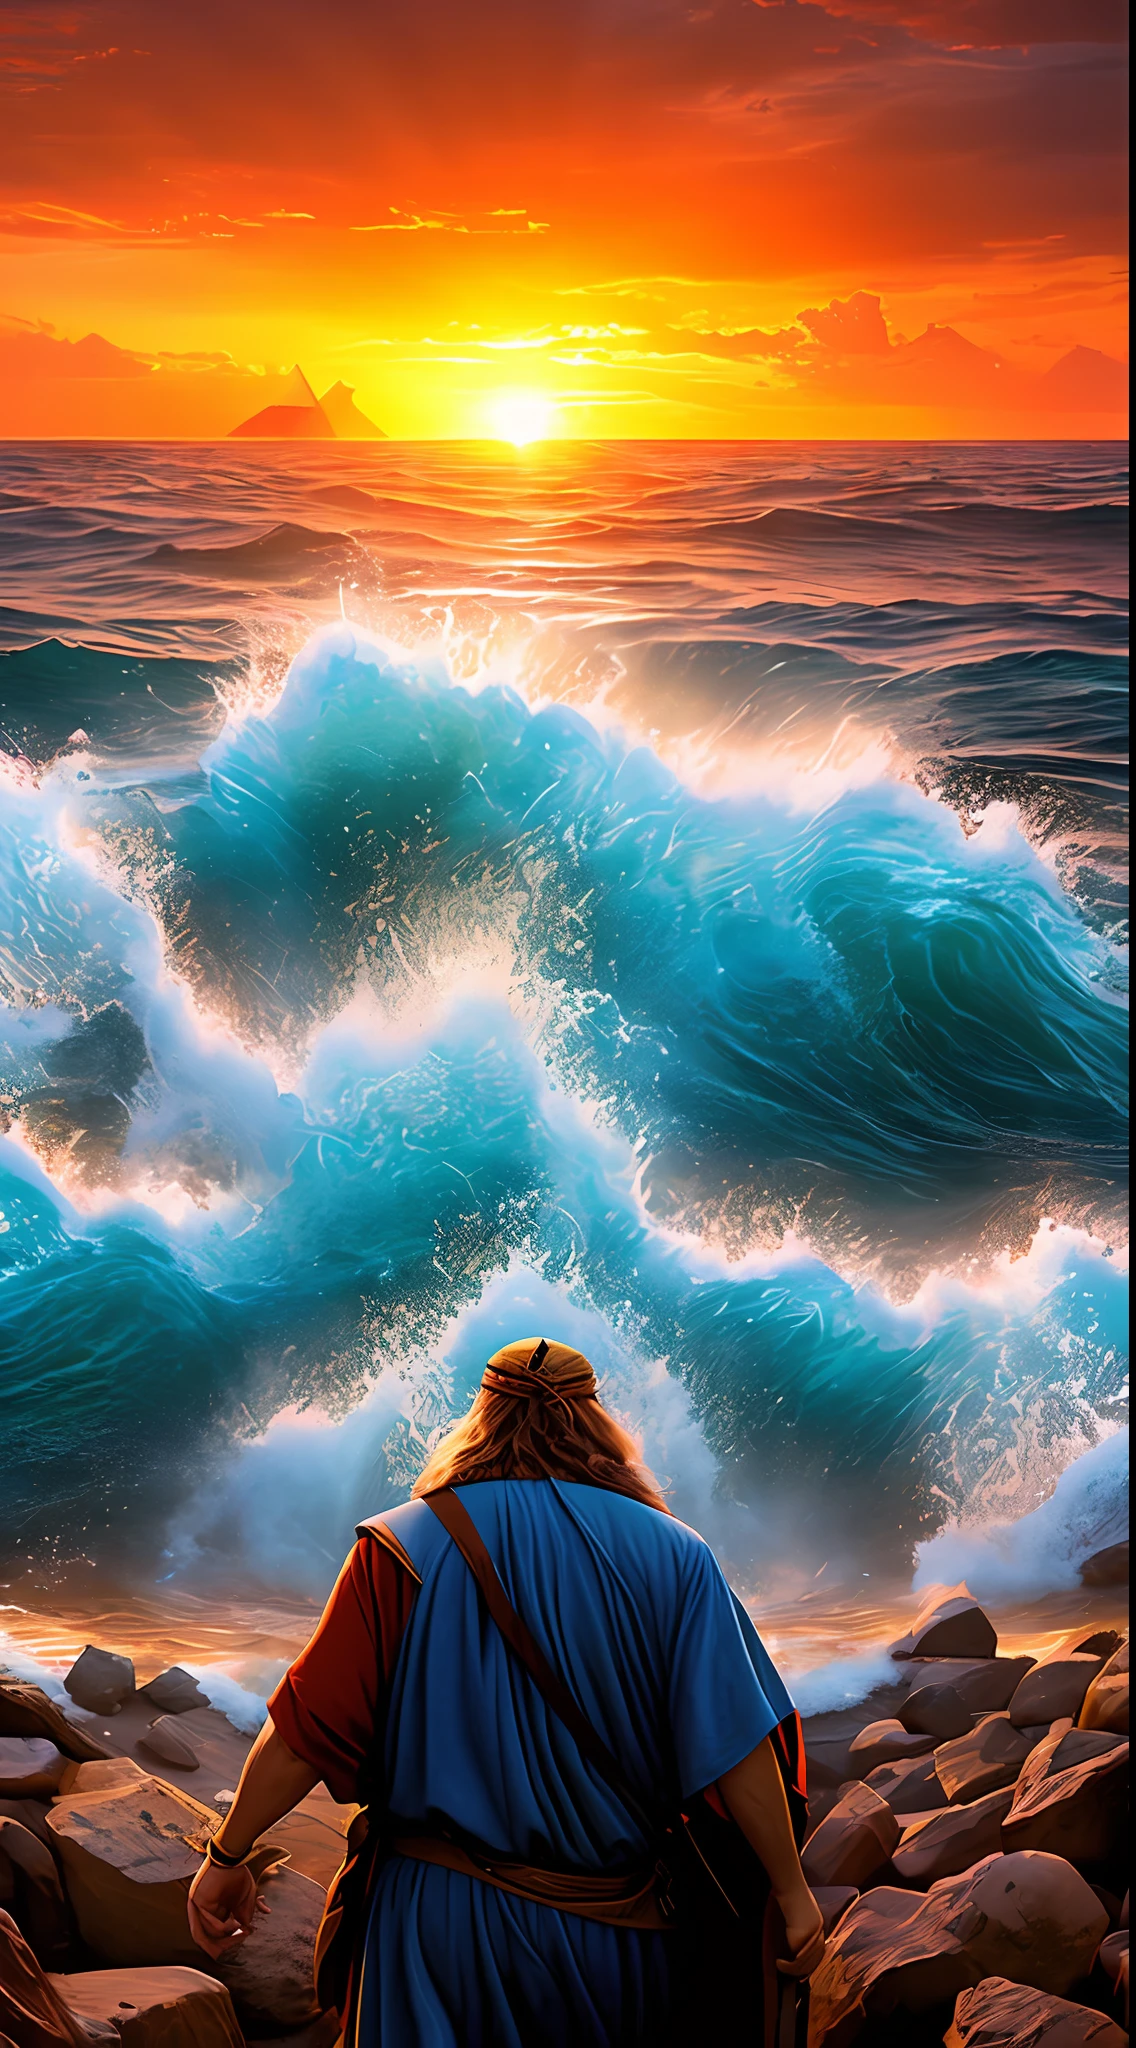 高清, 摩西为以色列人分开红海的超现实主义图像. 摩西站在海边, 拿着他的手杖. 大海正在分开, 形成两堵水墙. 以色列人从海中走过, 向 . 埃及军队在以色列人后面，但被困在水墙之间. 太阳正在地平线下落, 天空布满了红色和橙色的云.